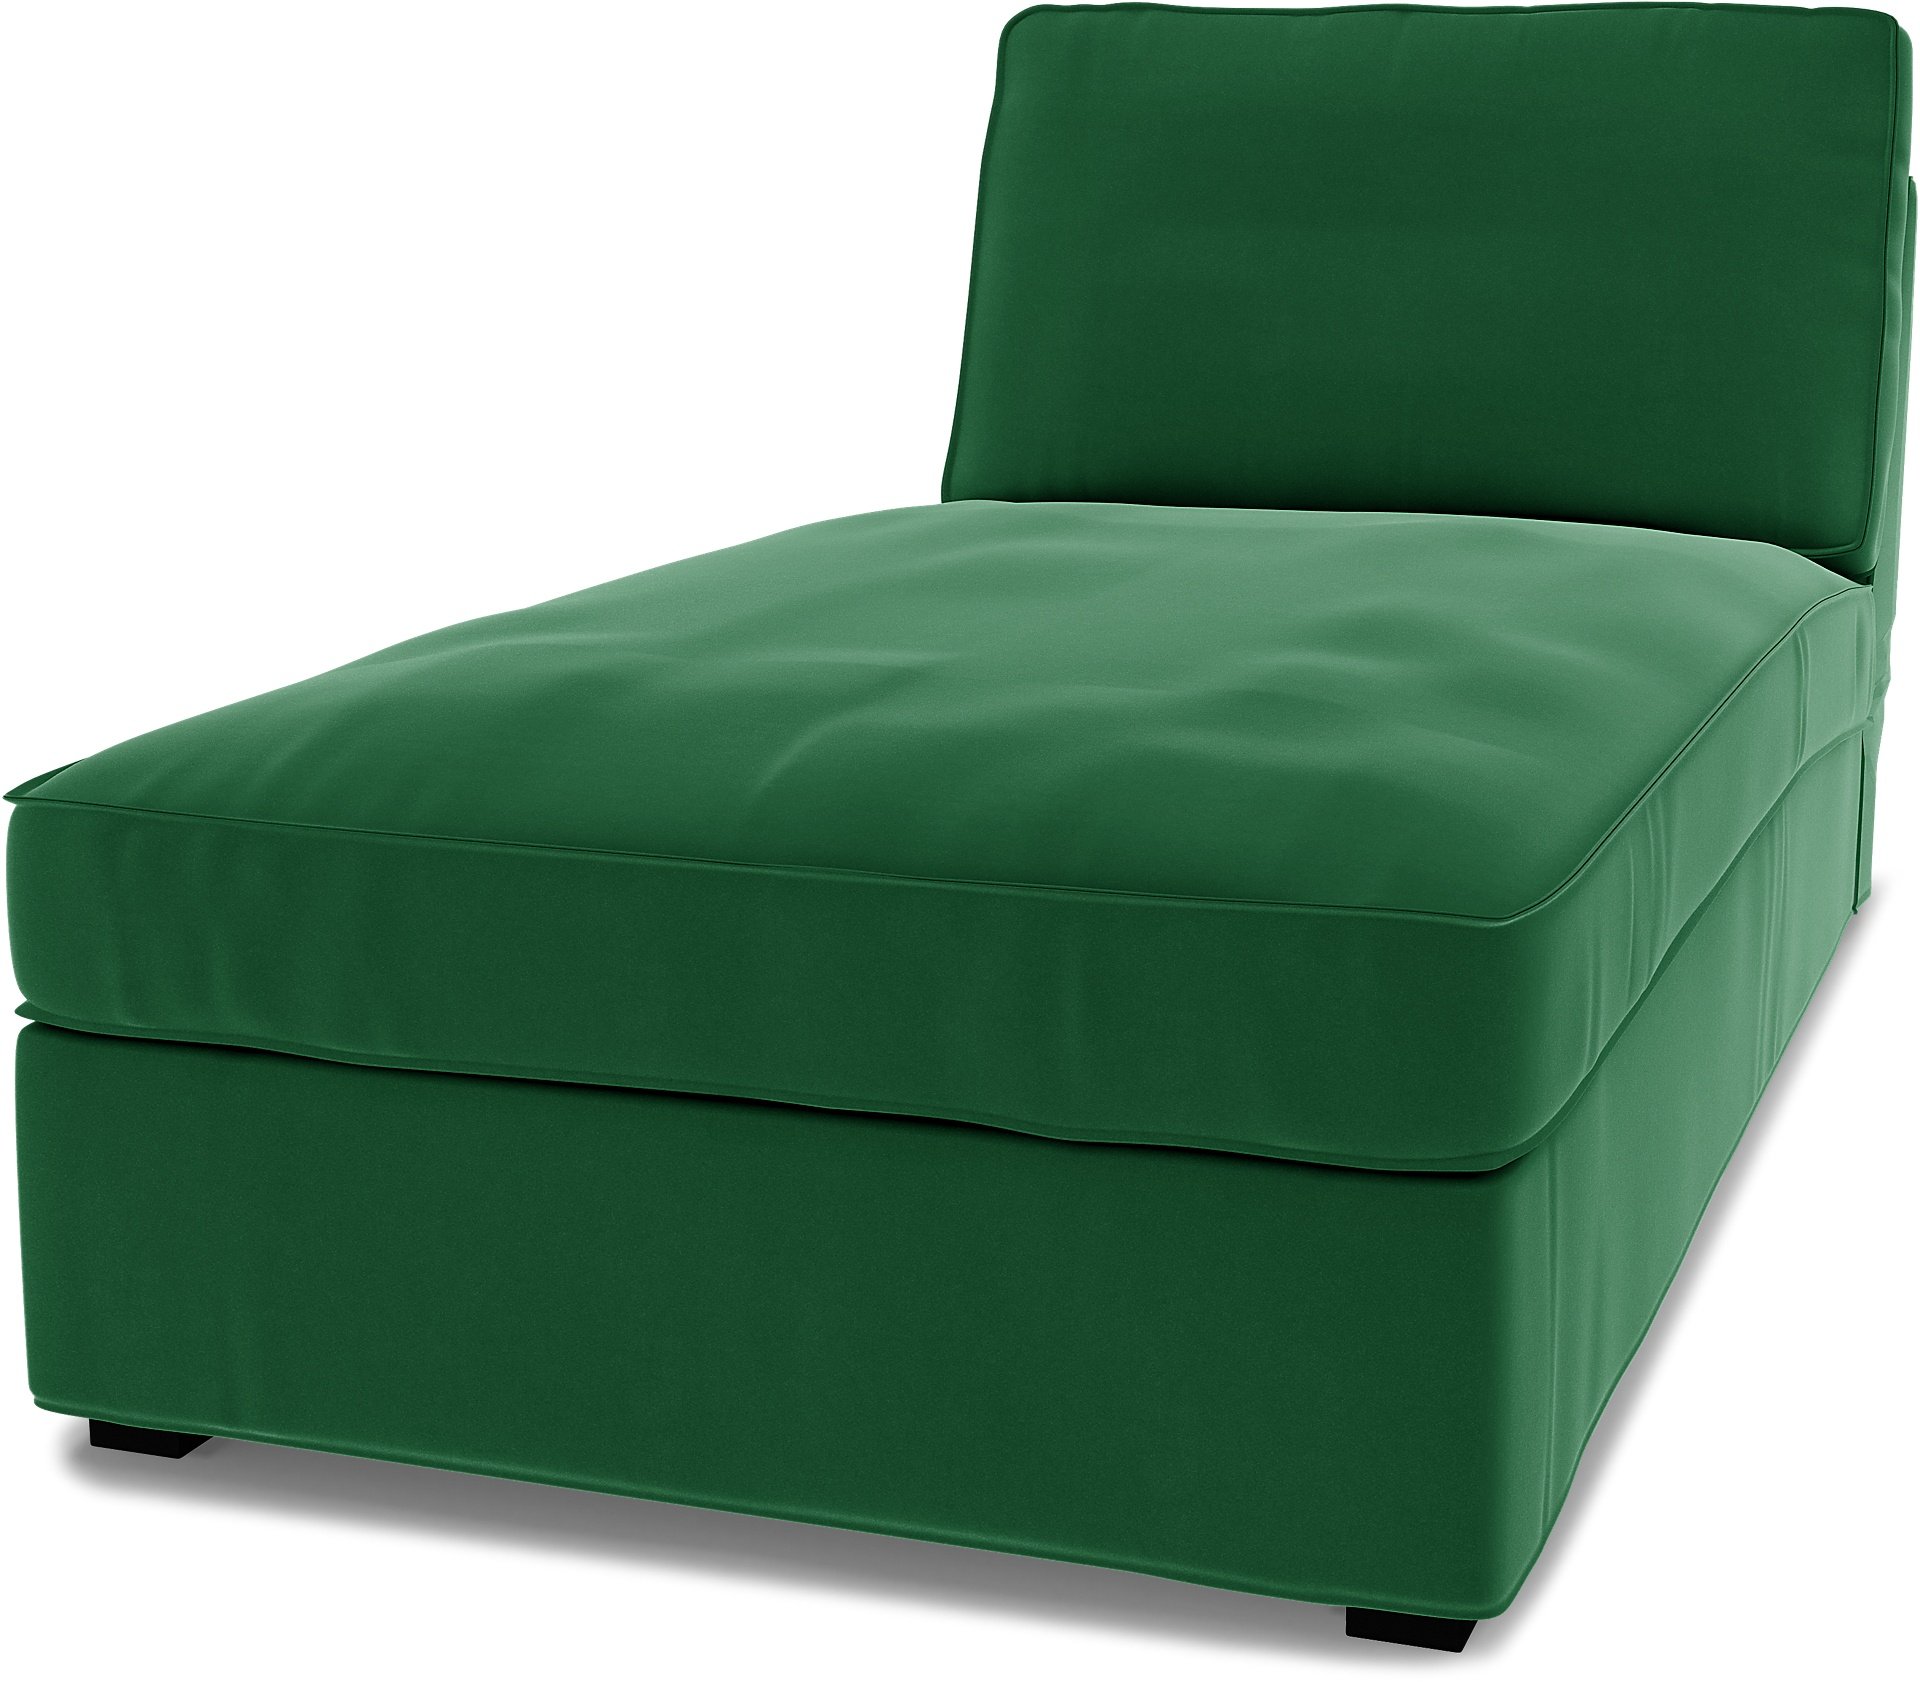 IKEA - Kivik Chaise Longue Cover, Abundant Green, Velvet - Bemz